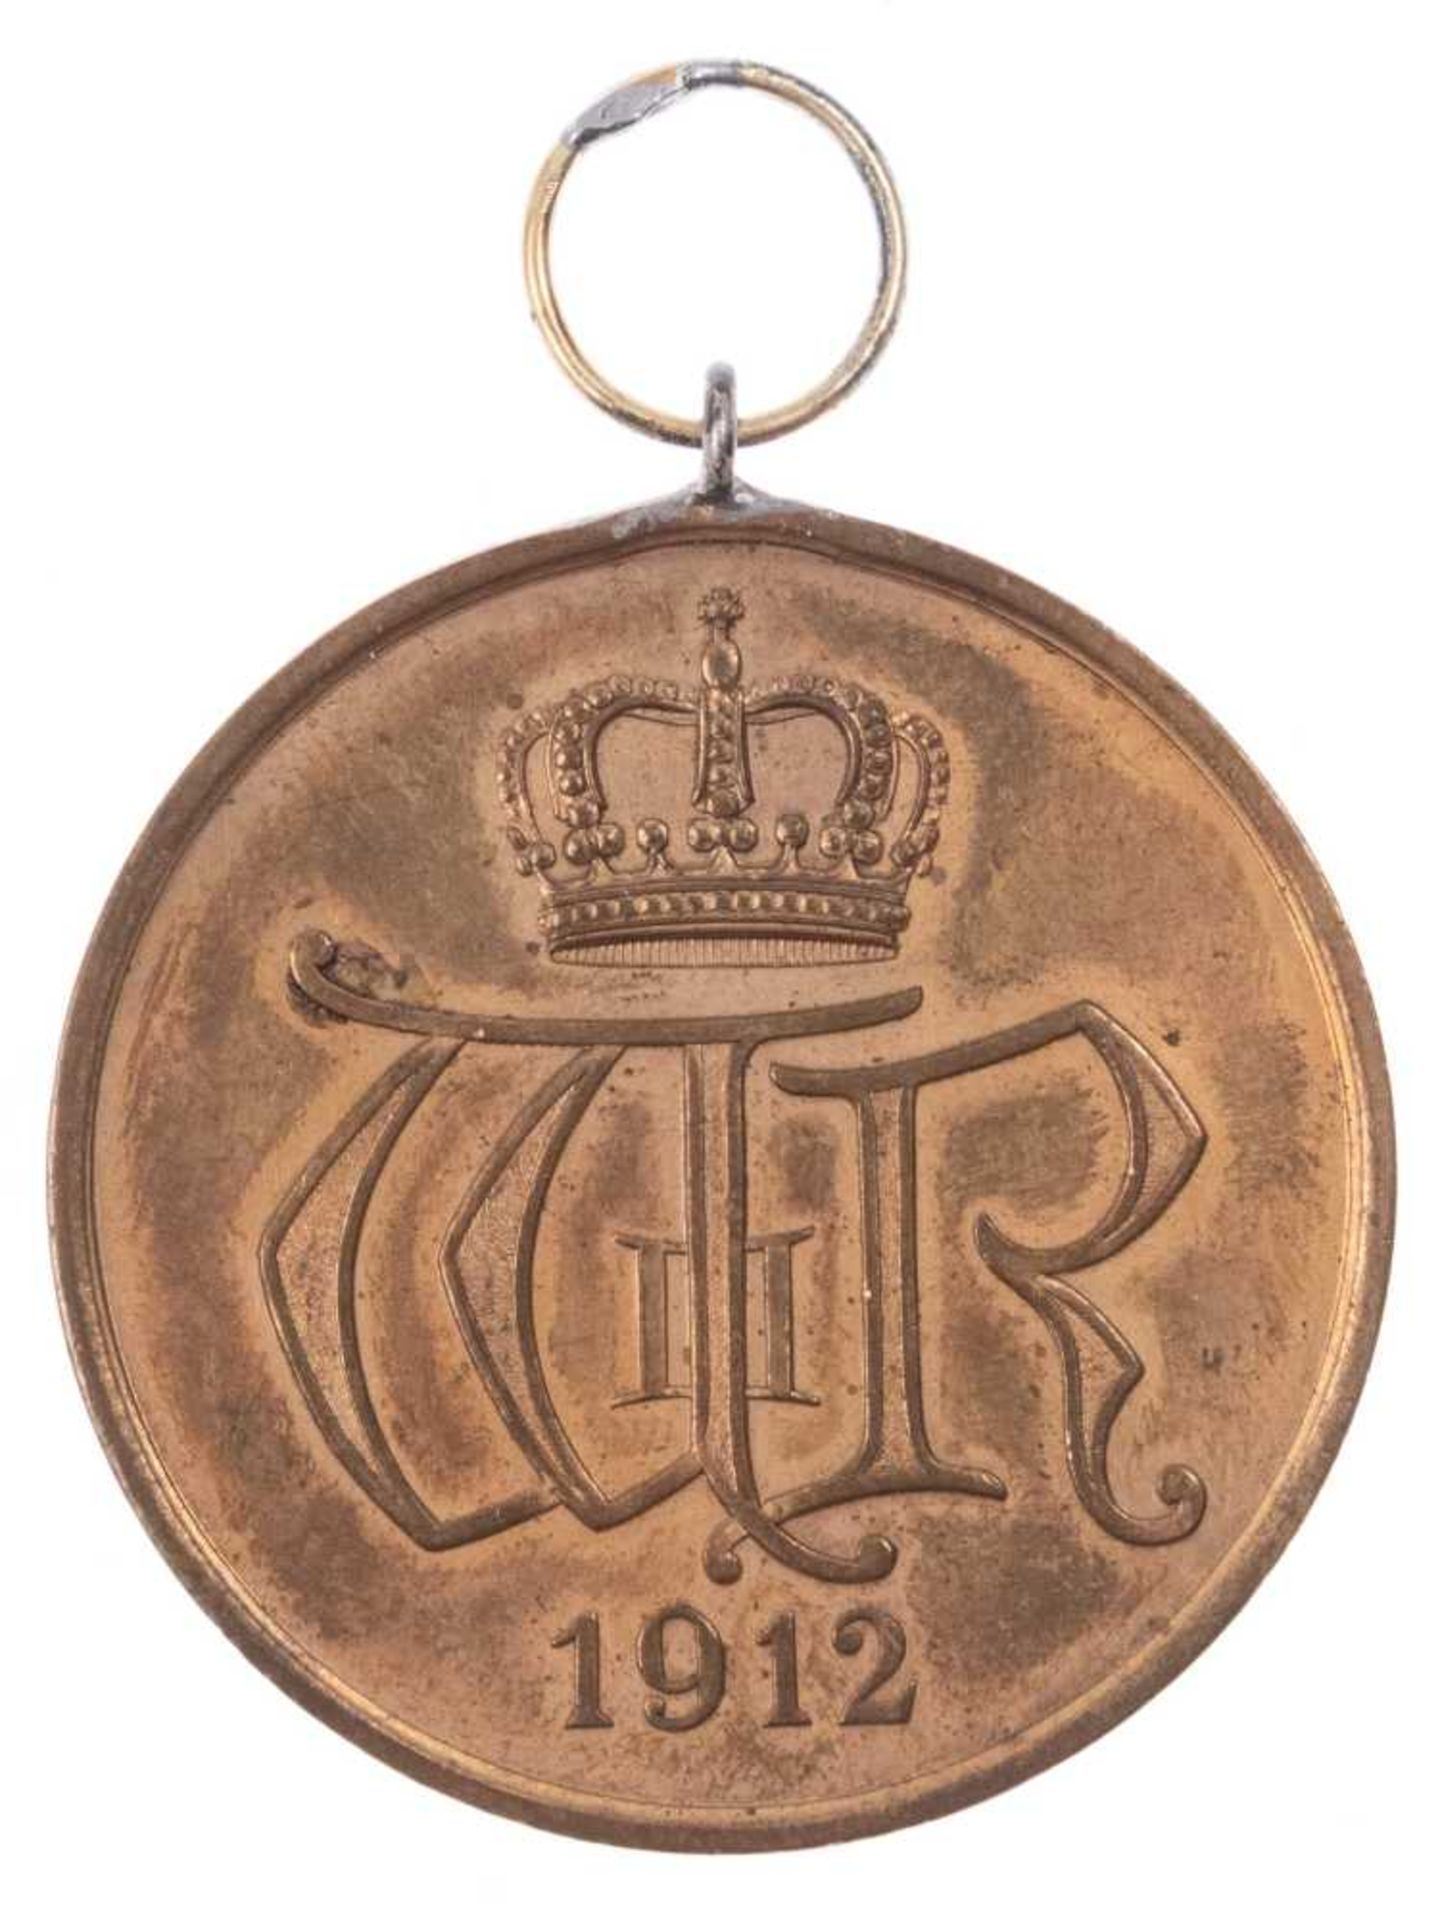 Preußen, Allgemeines Ehrenzeichen in Bronze (1912-1918), Bronze, OEK 1843, Zustand 2.